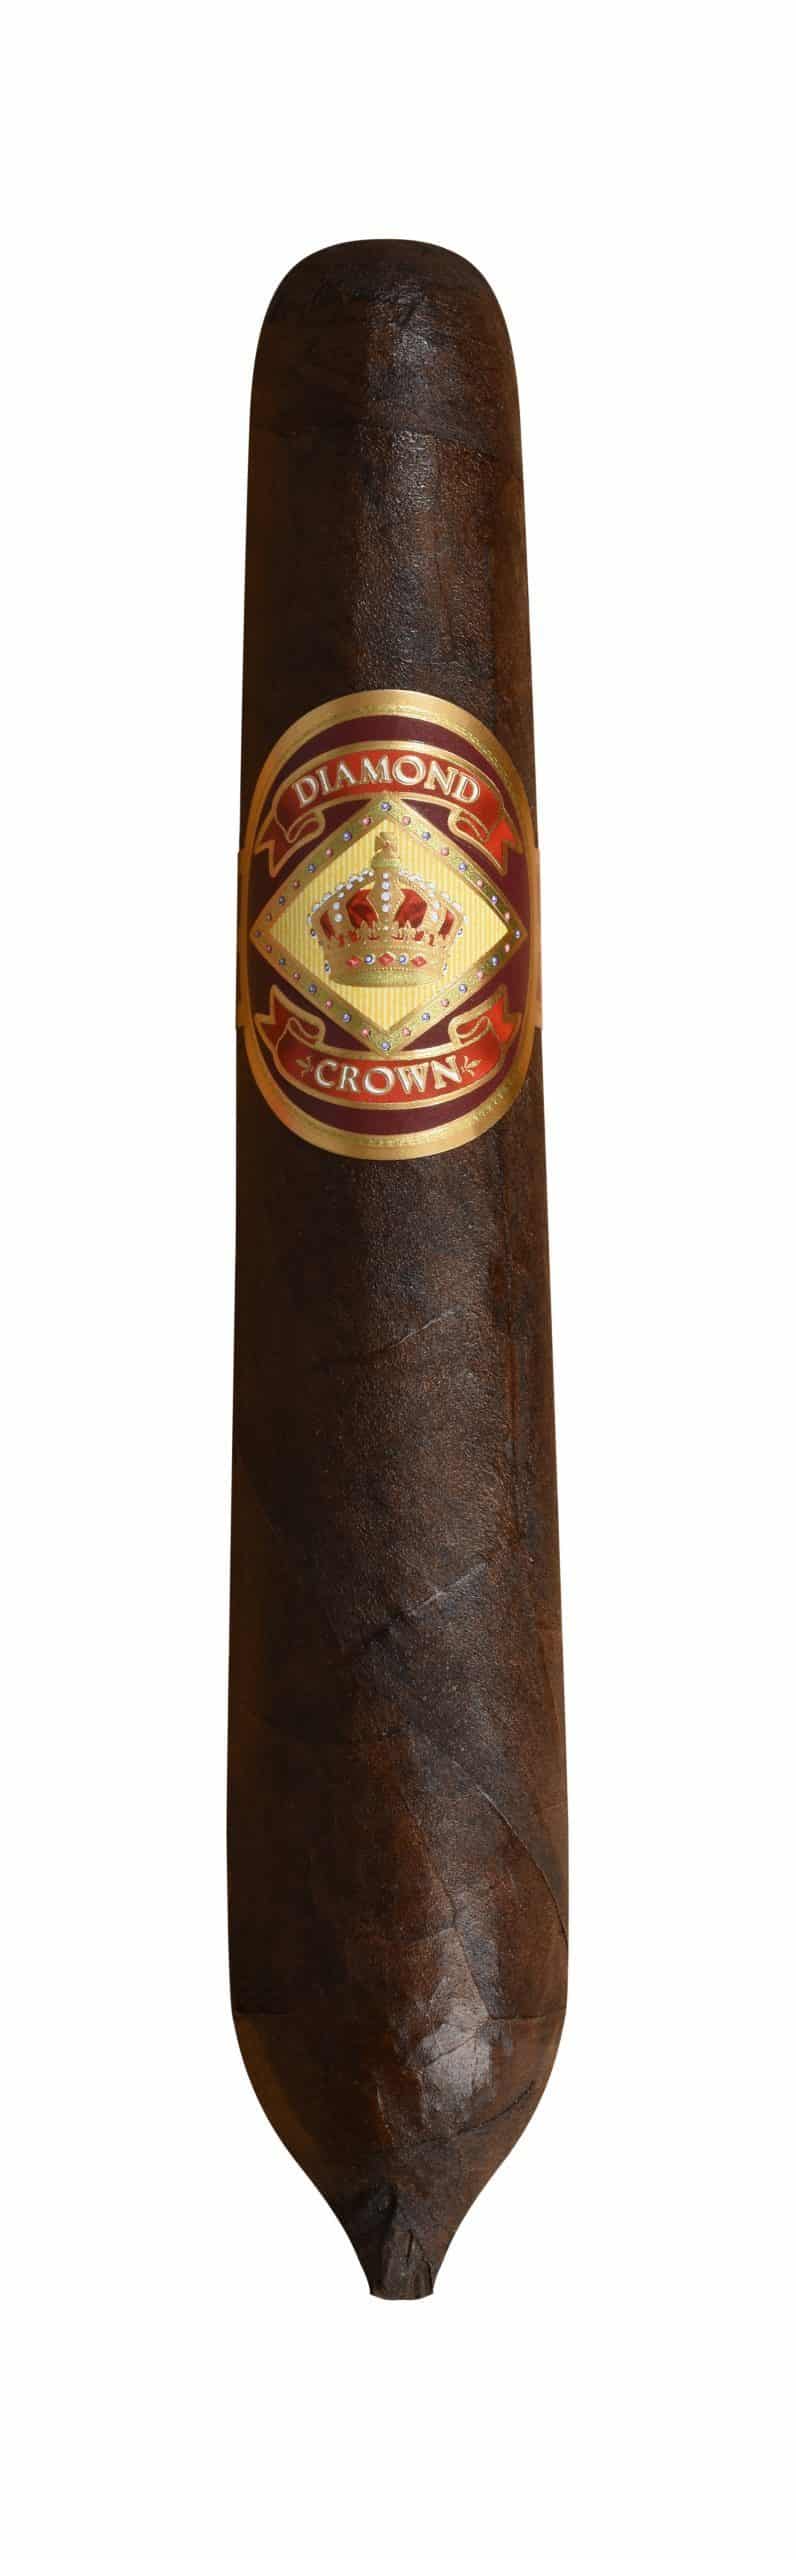 diamond crown maduro number 6 single cigar